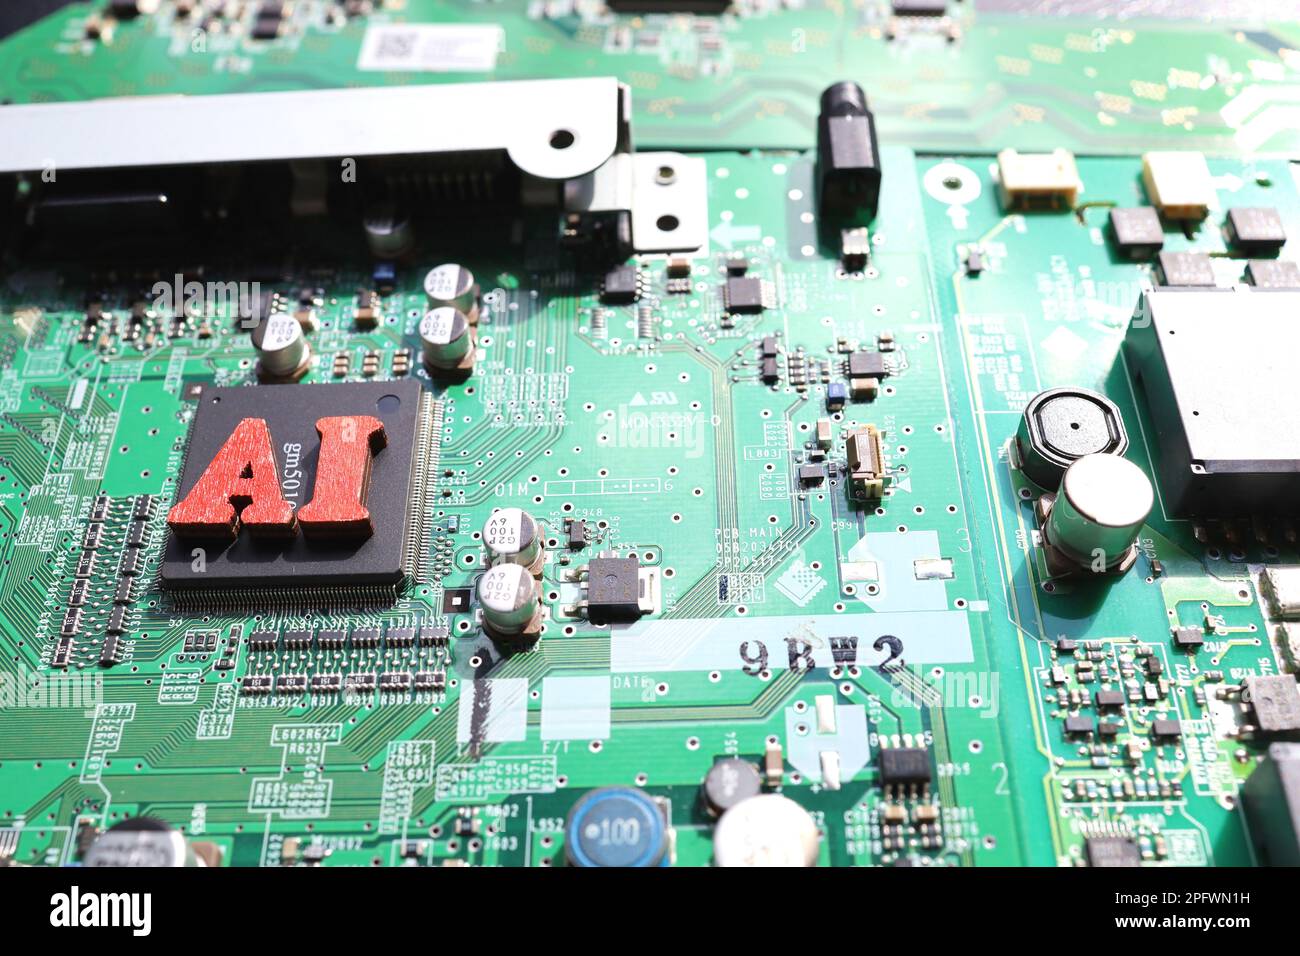 Halbleiter-Leiterplatte und AI-Buchstaben. Konzept: KI- und Halbleiterindustrie. Stockfoto